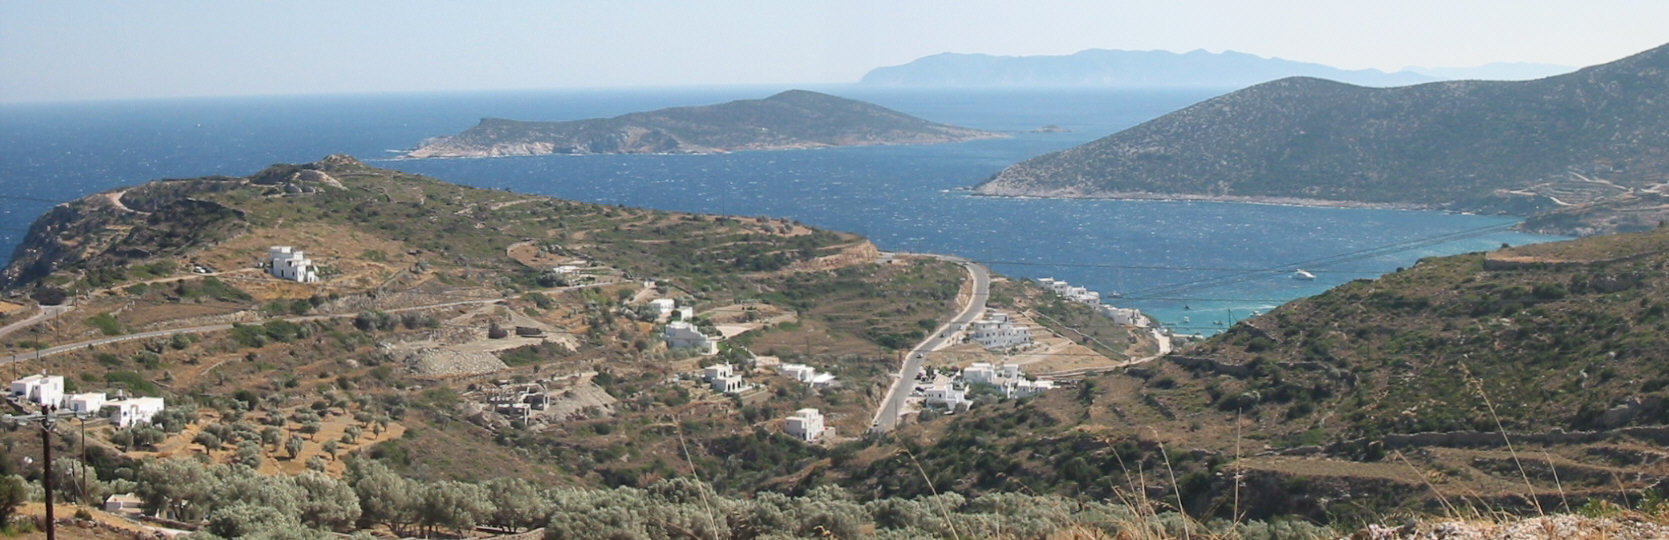 Sifnos Südosten Bucht Blick auf Milos im Hintergrund